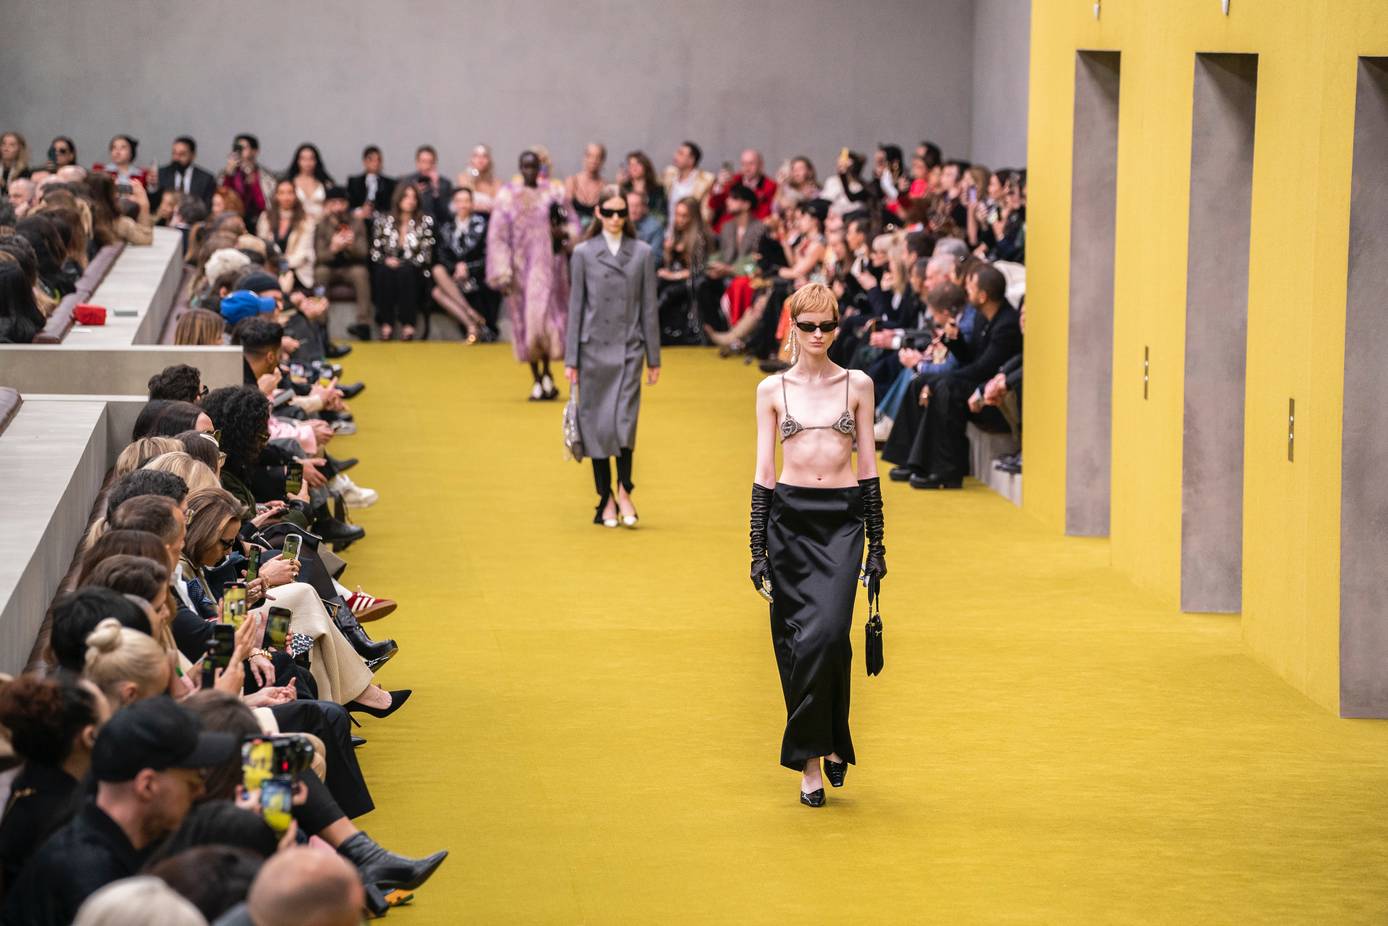 Paris, Mailand + Co.: Die aufregendsten Looks der Fashion Weeks